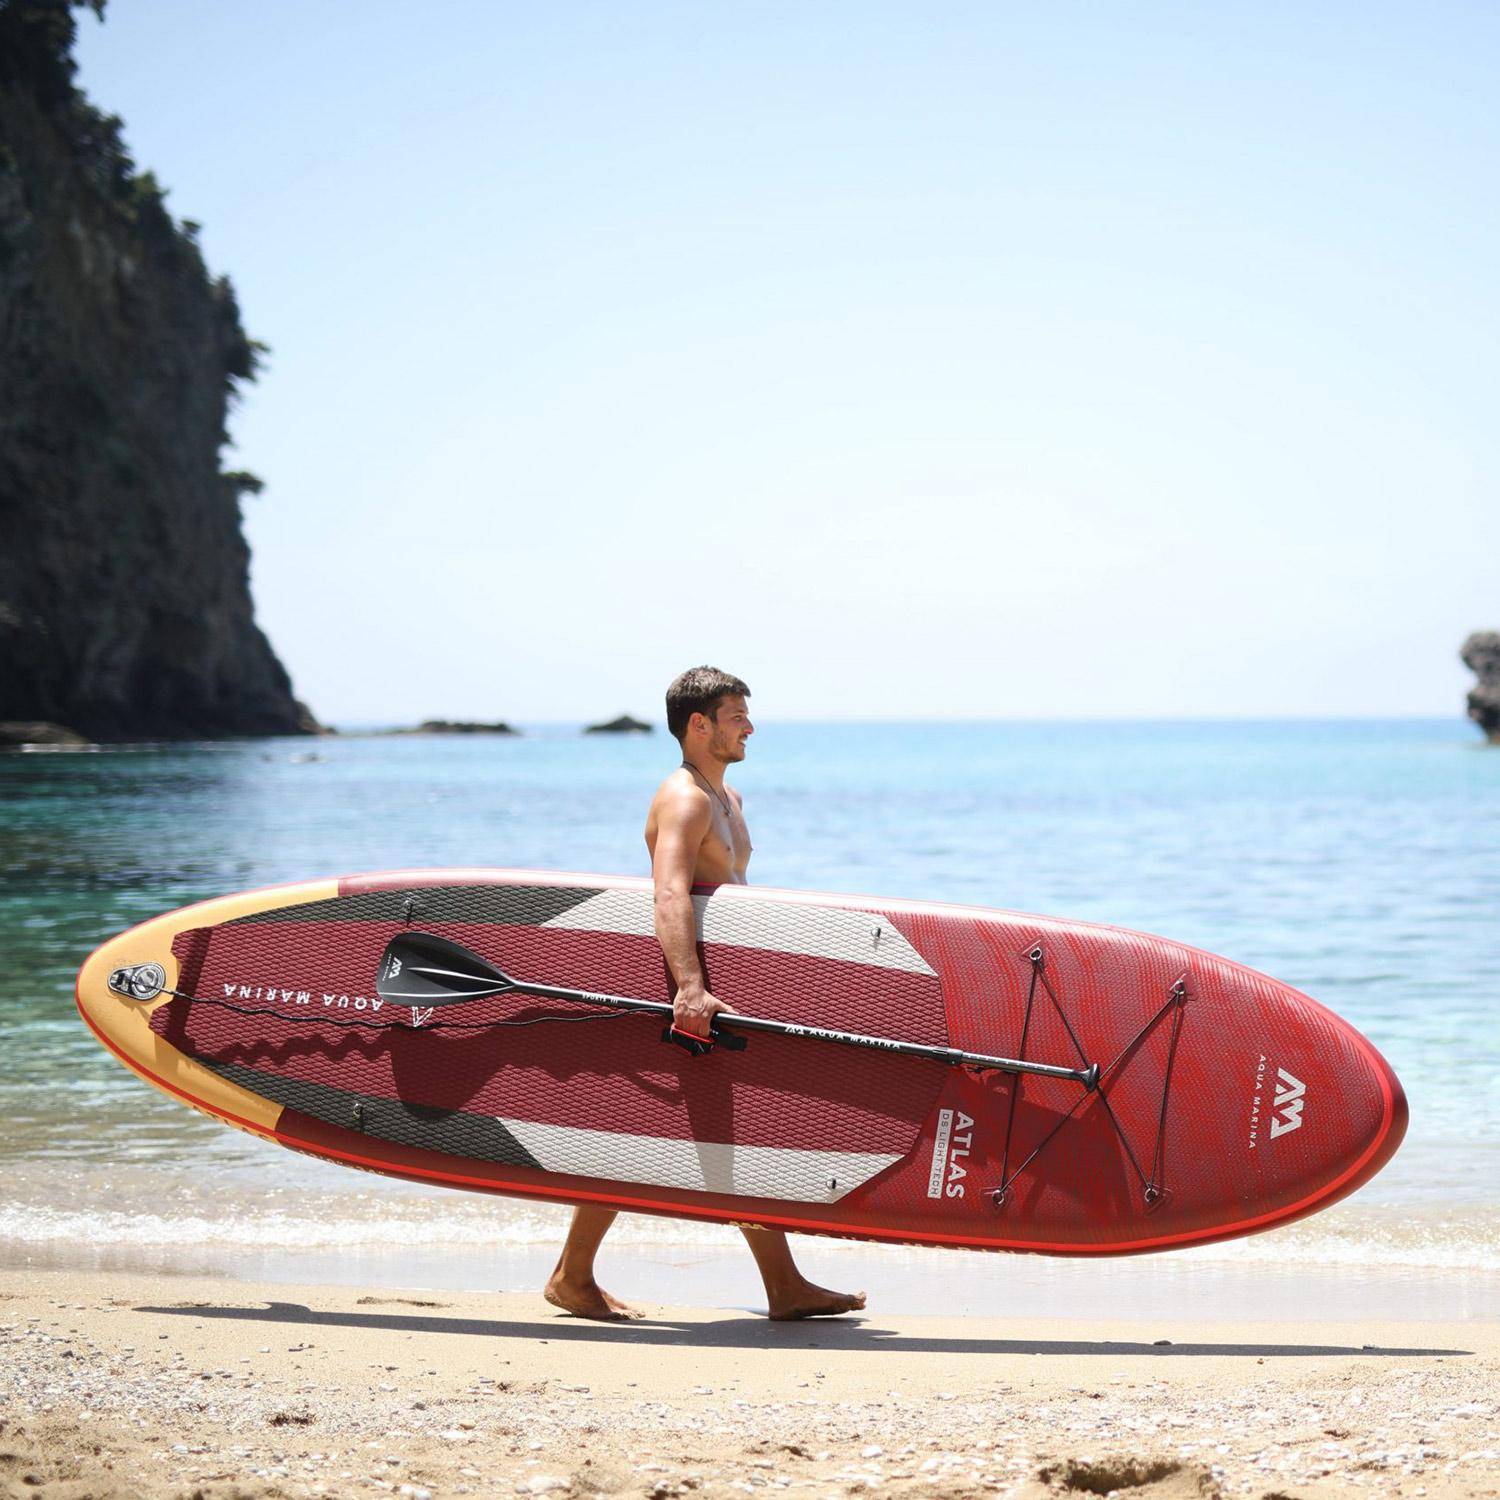 Prancha Paddle Surf - Atlas 12'- 15cm de espessura - Pack de paddle insuflável (SUP) com bomba de alta pressão, paddle, leash e saco de armazenamento incluídos Photo1